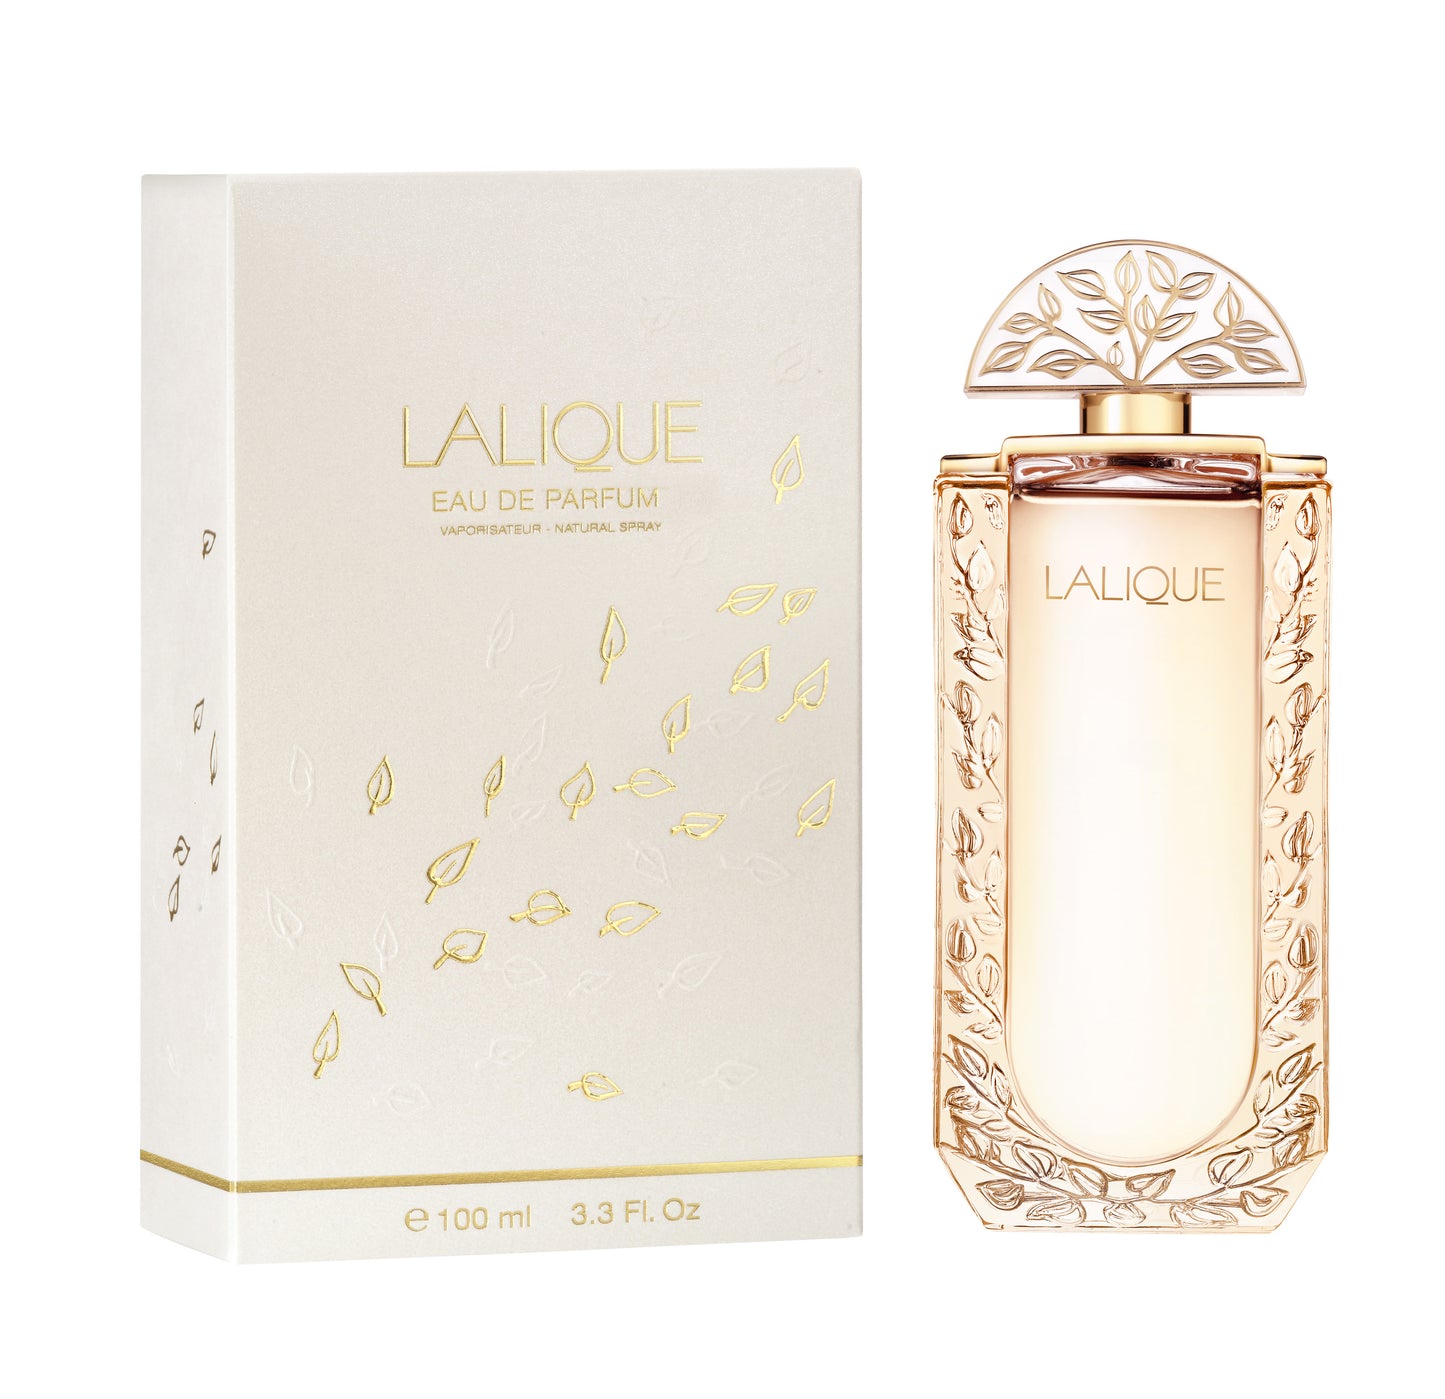 Lalique de Lalique 3.3 oz Eau de Parfum